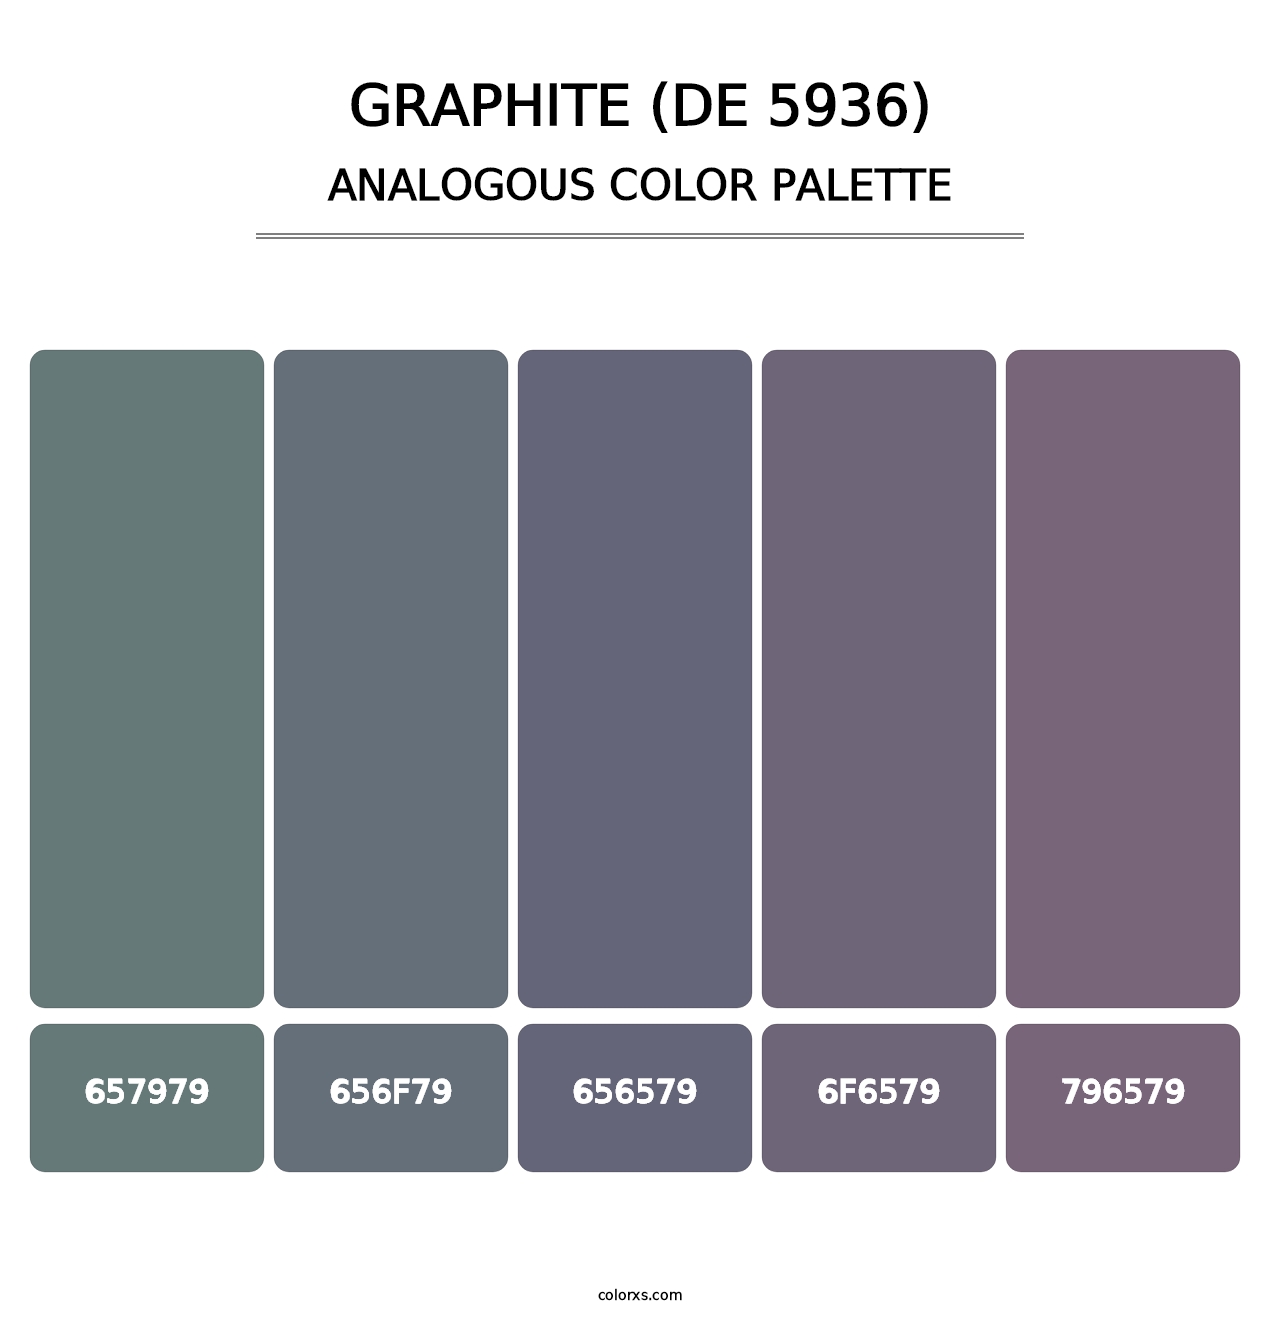 Graphite (DE 5936) - Analogous Color Palette